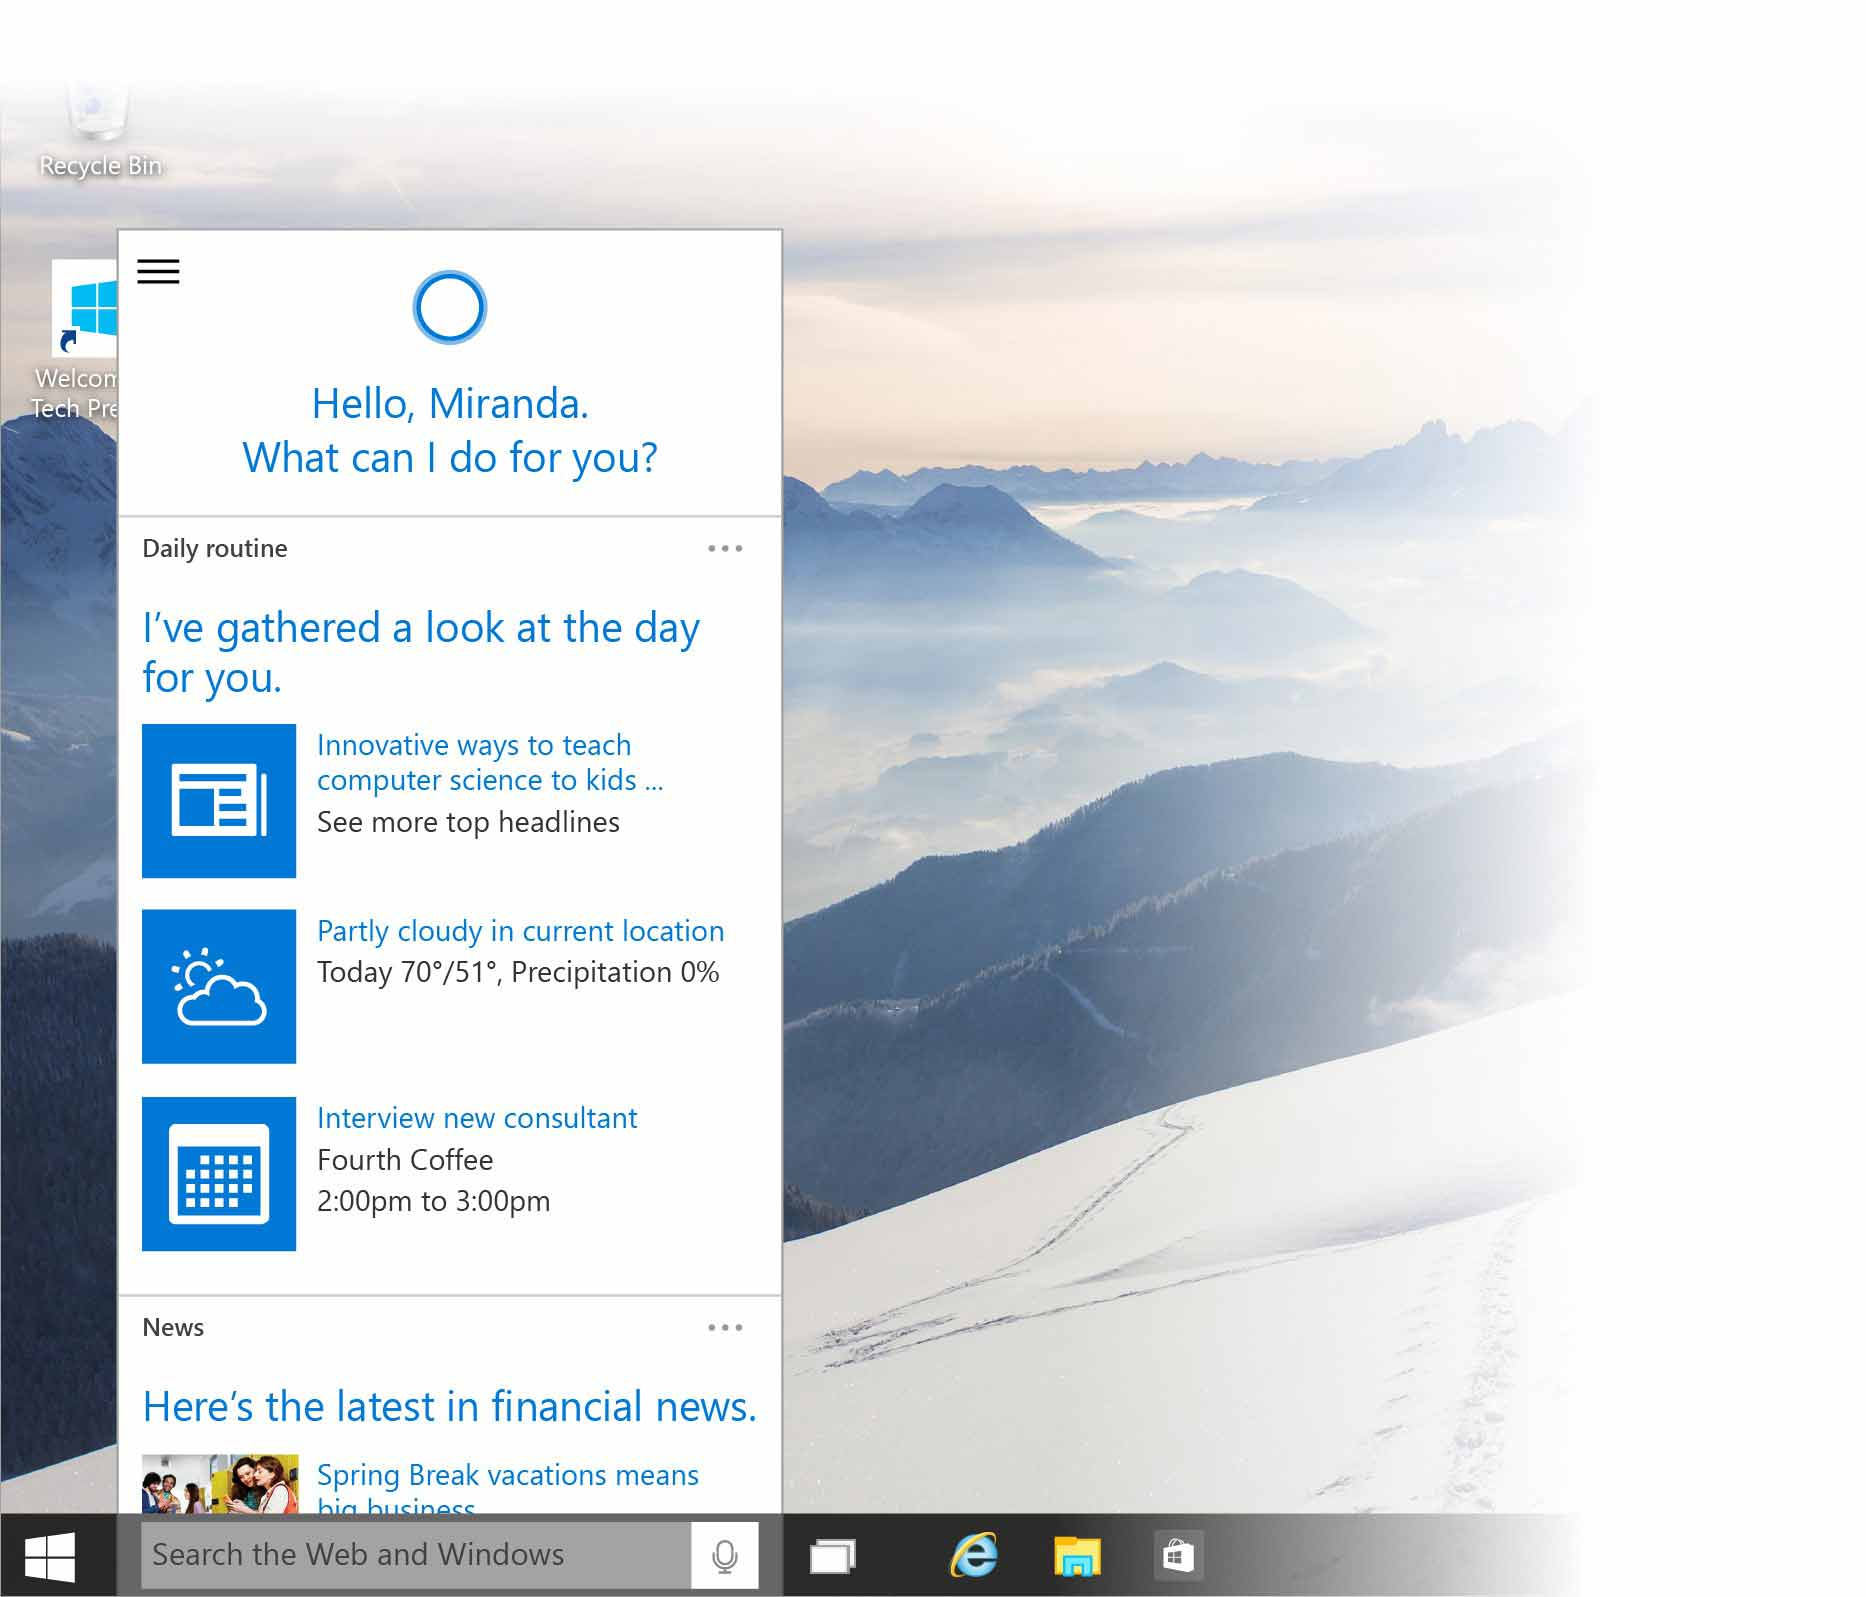 Kelebihan Windows 10 yaitu punya asisten virtual bernama Cortana